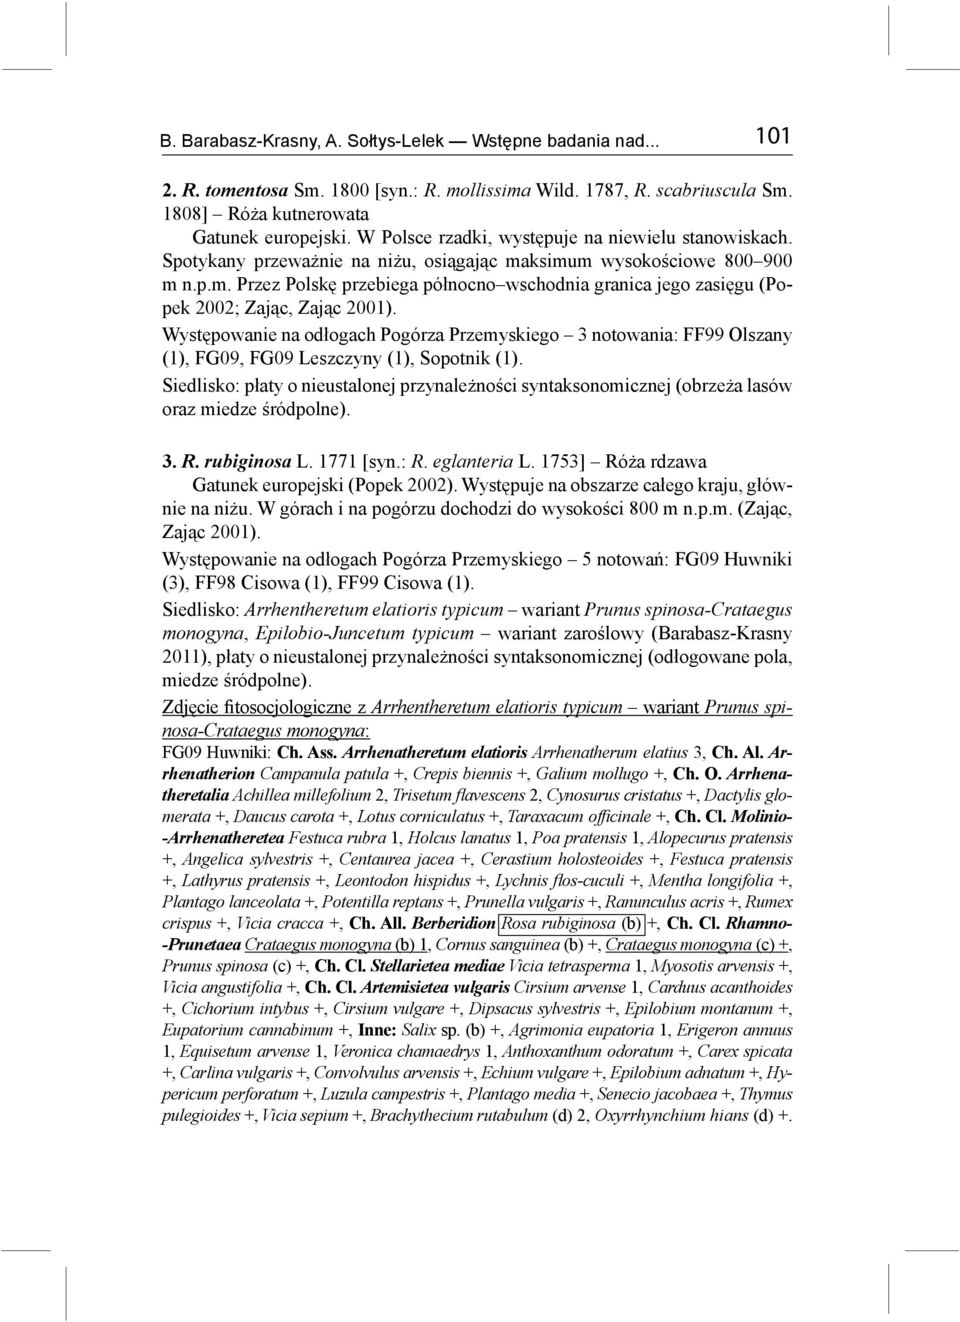 Występowanie na odłogach Pogórza Przemyskiego 3 notowania: FF99 Olszany (1), FG09, FG09 Leszczyny (1), Sopotnik (1).